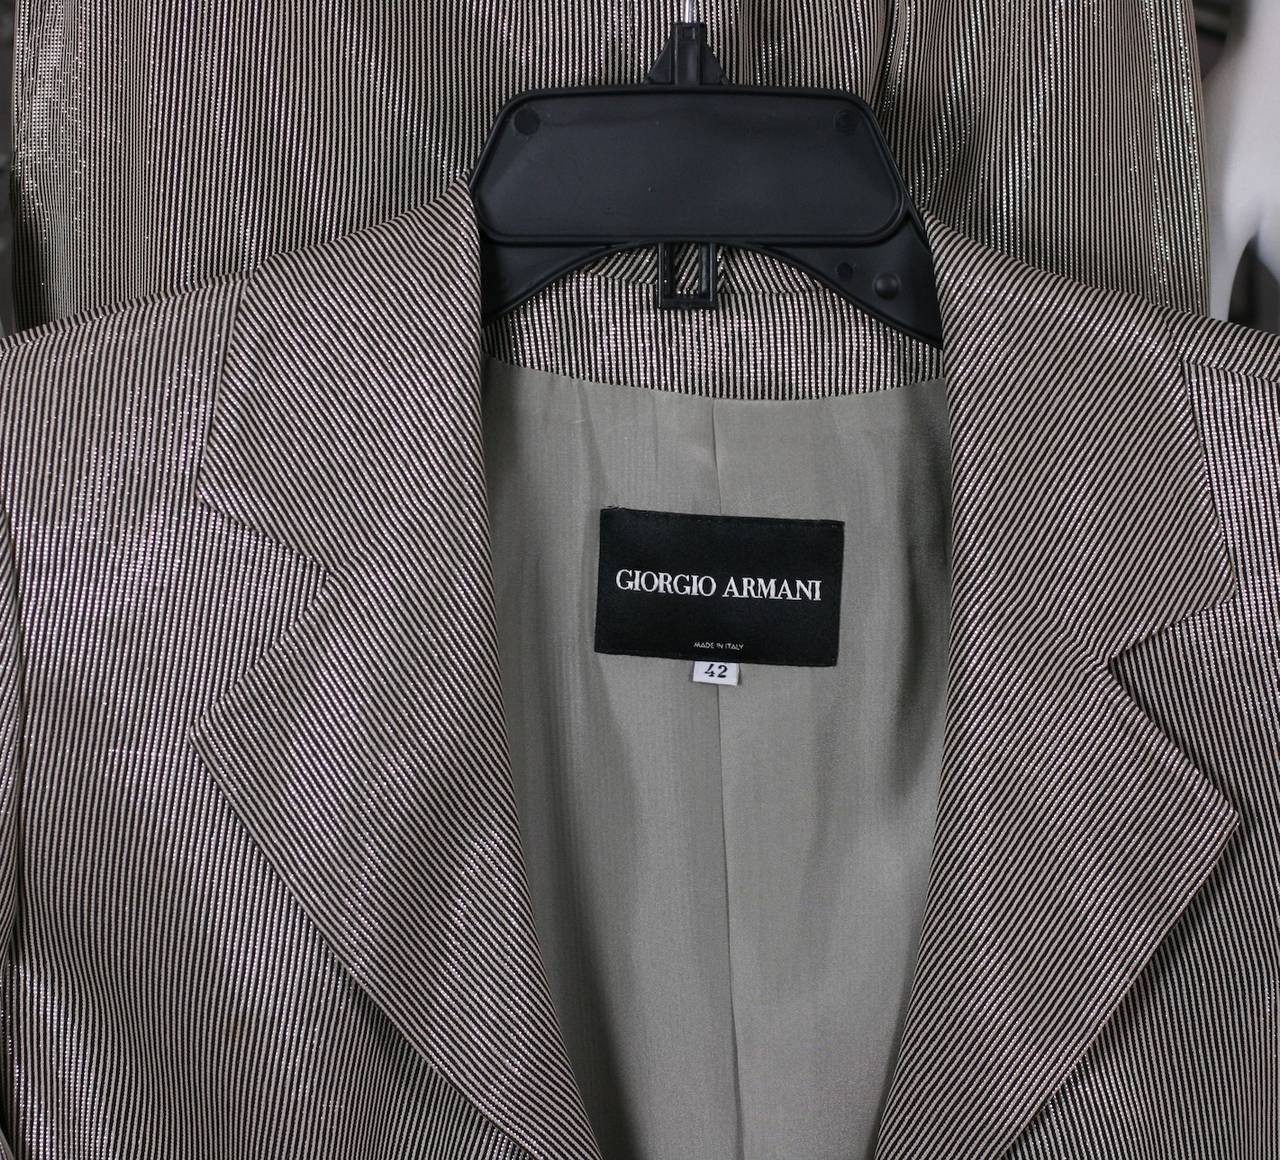 Giorgio Armani Liquid Lame Suit For Sale at 1stdibs